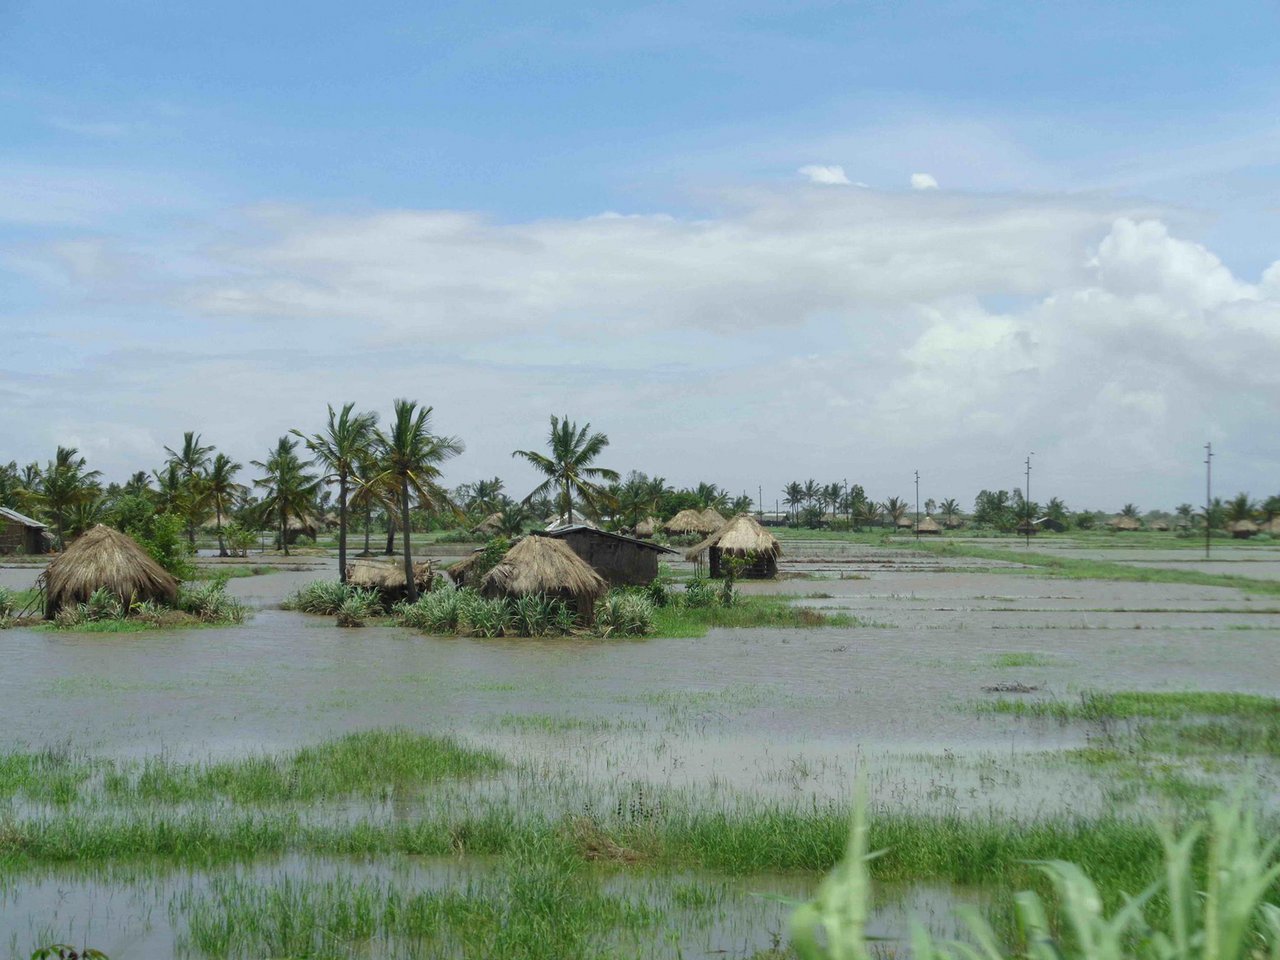 Dieses Jahr fiel in Mozambique besonders viel Regen und setzte riesige Flächen unter Wasser. (Bild Romea Brügger)